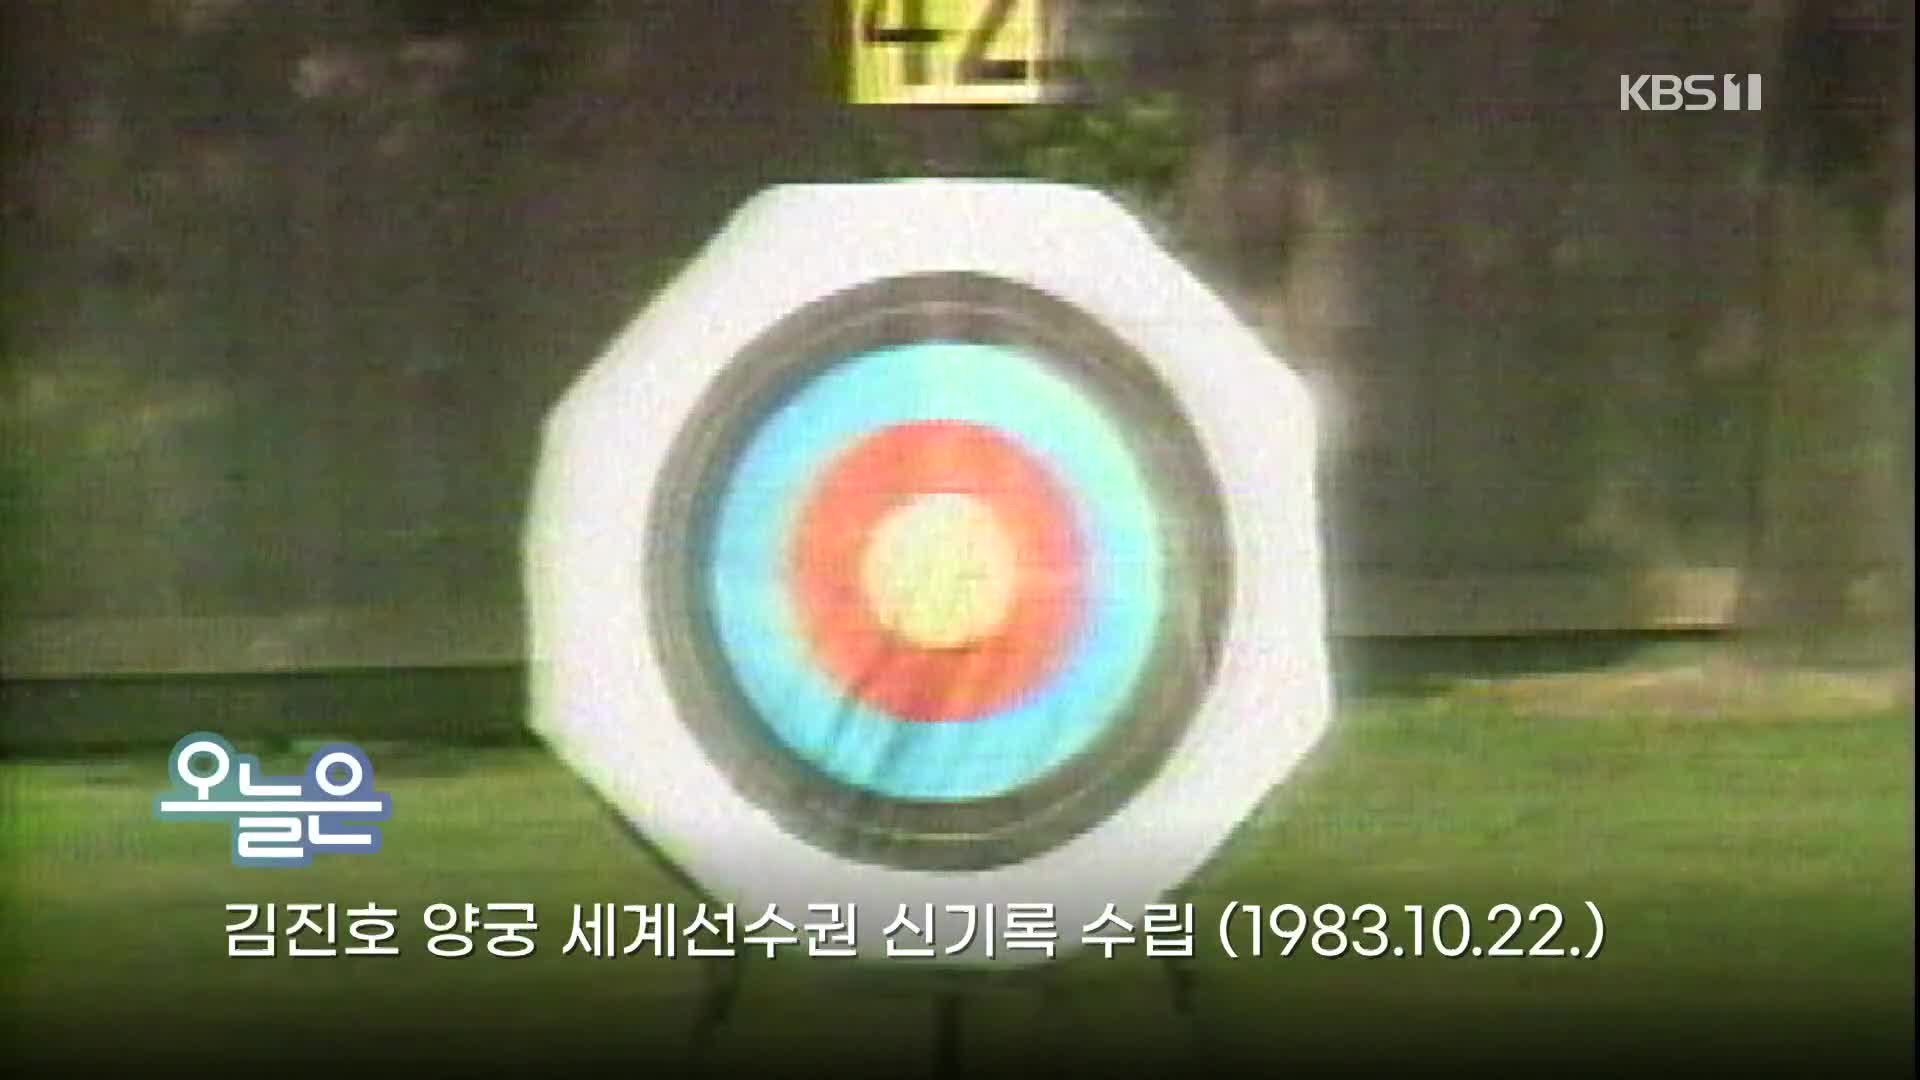 [오늘은] 김진호 양궁 세계선수권 신기록 수립 (1983.10.22.)